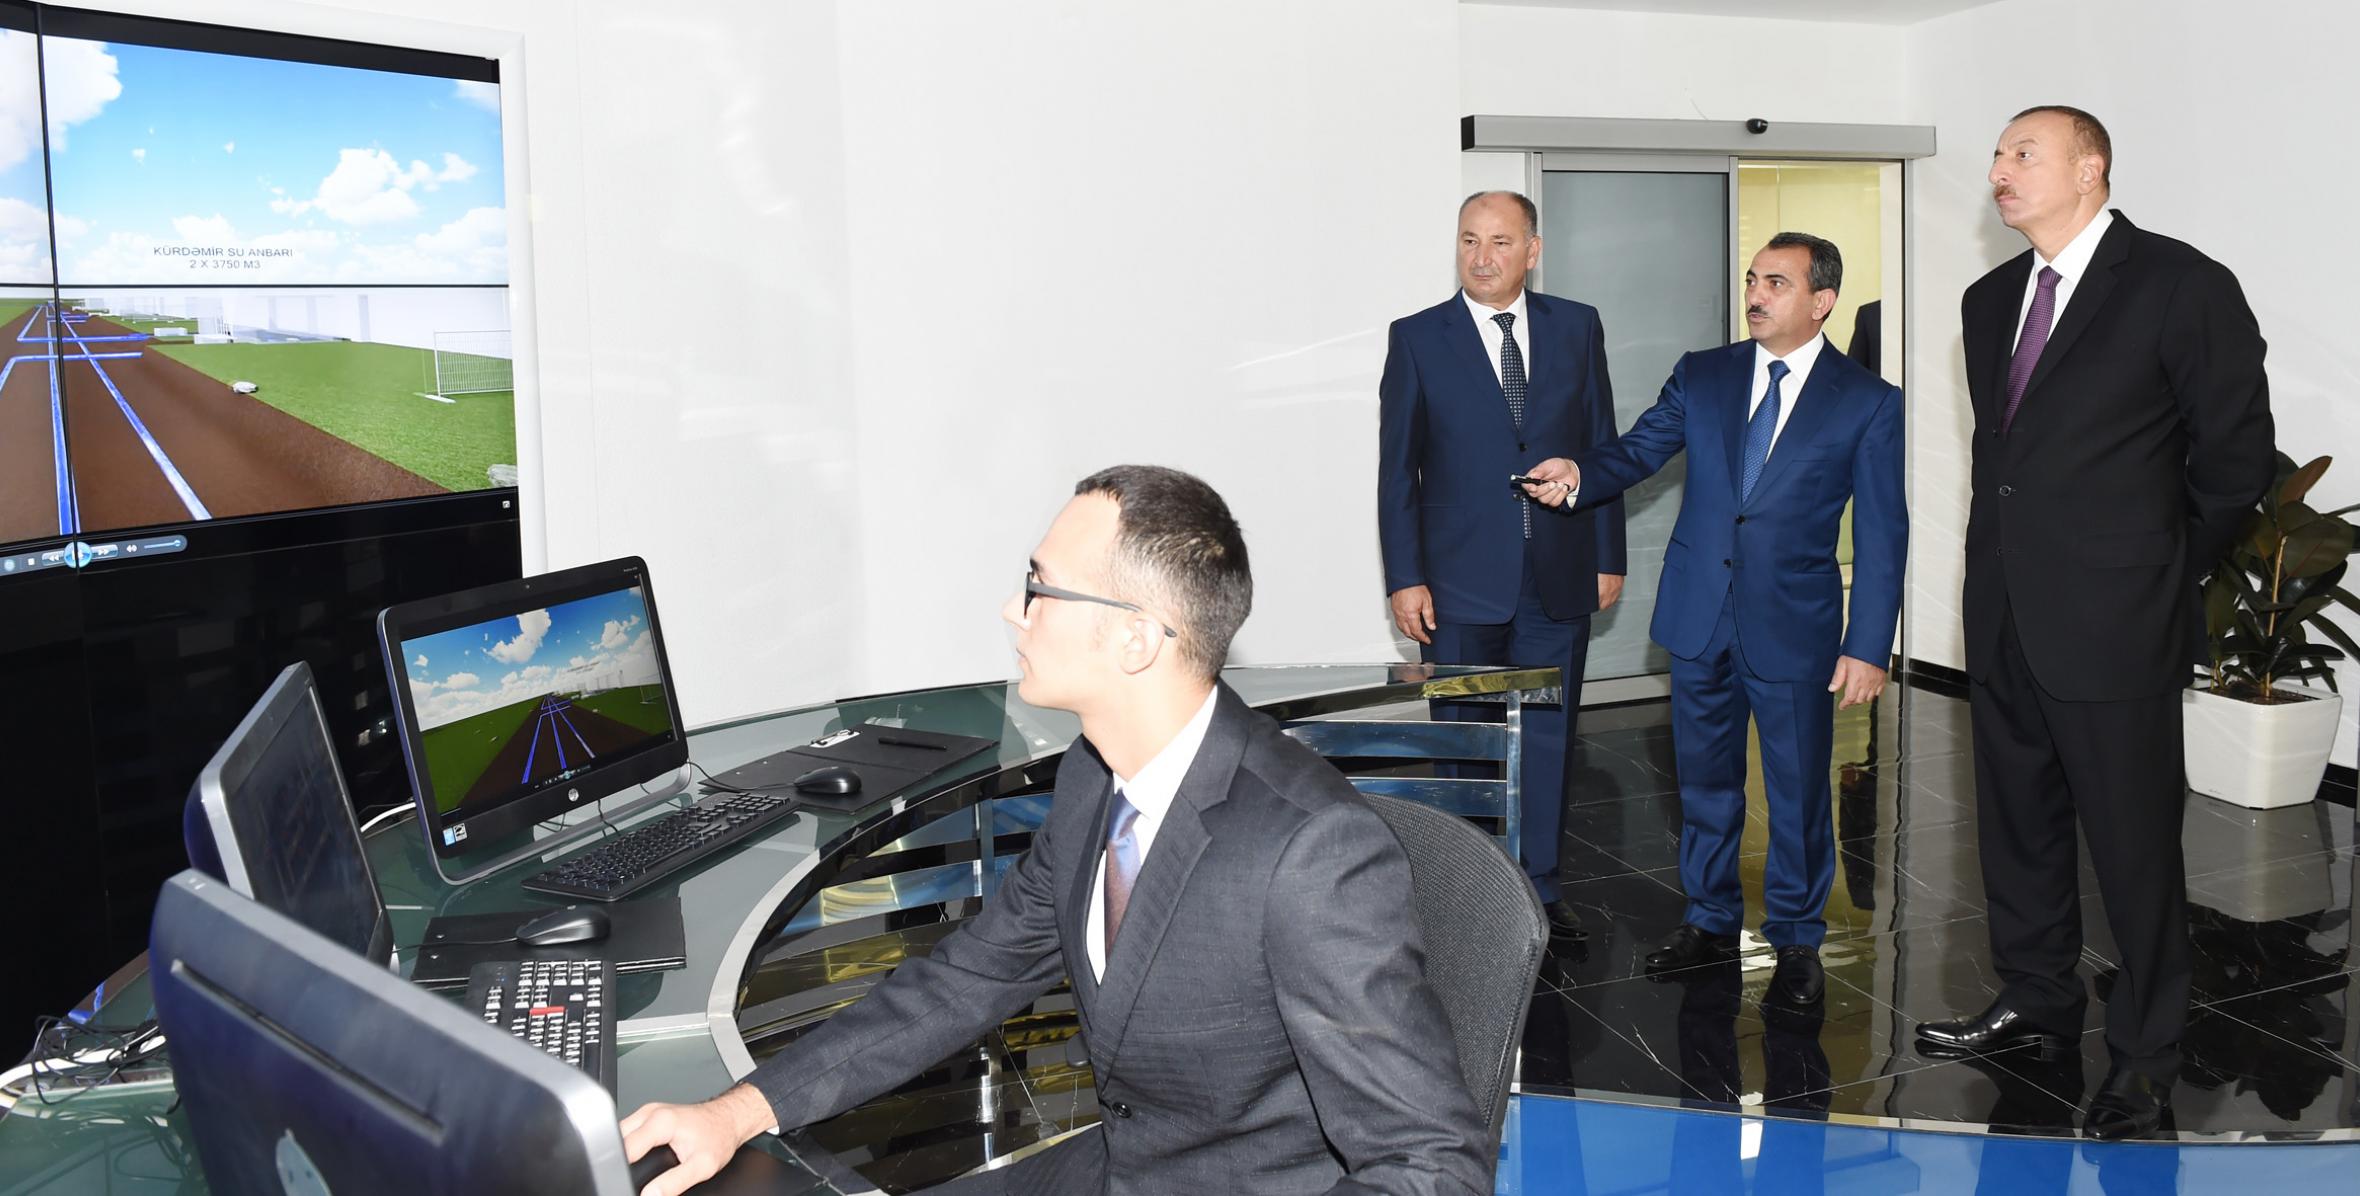 Ильхам Алиев принял участие в церемонии, организованной по случаю завершения проекта реконструкции системы водоснабжения города Уджар